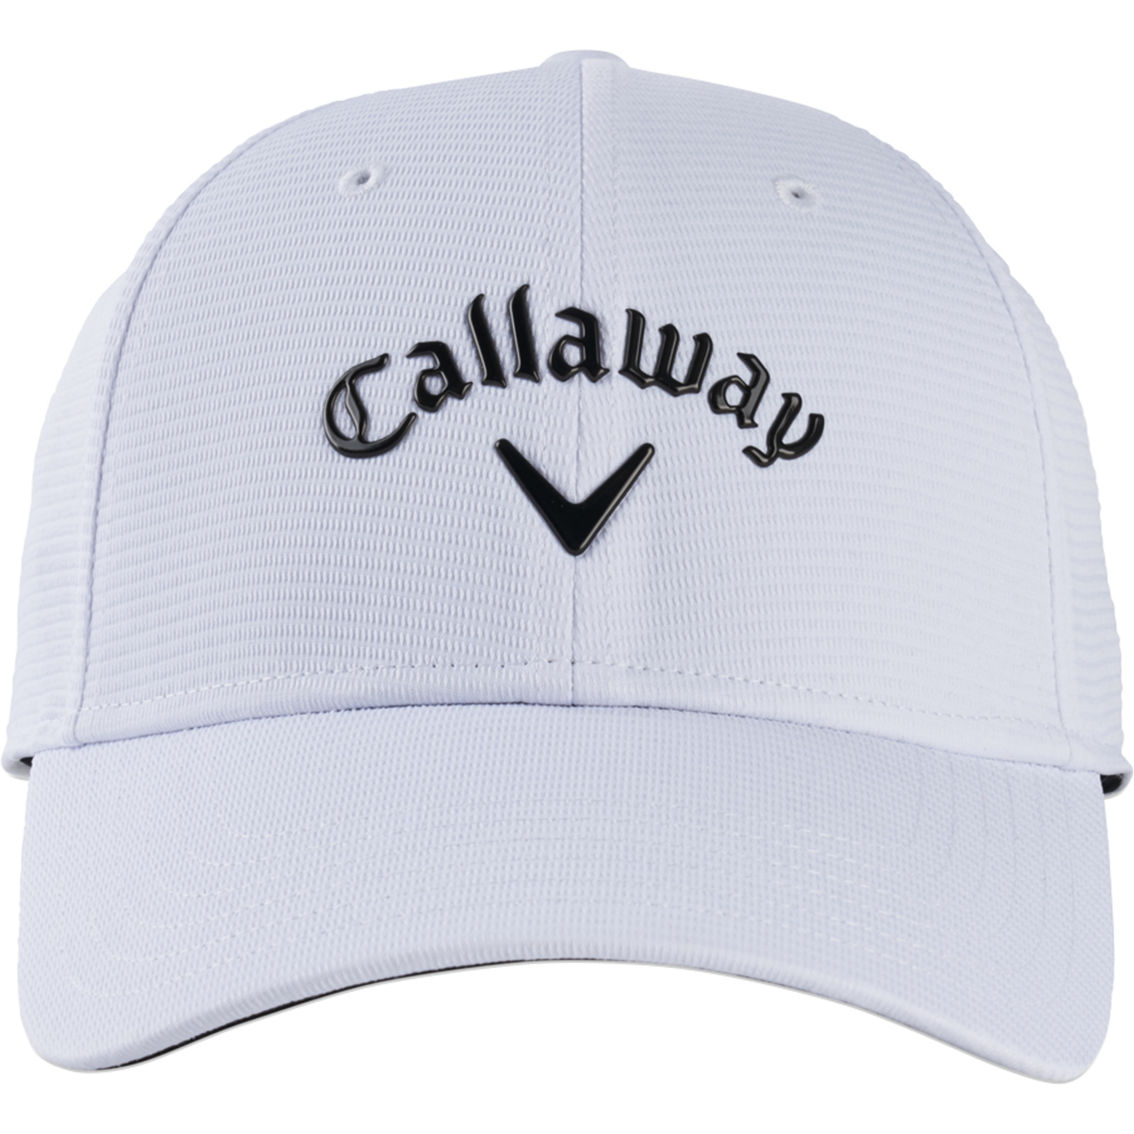 Callaway Liquid Metal '22 Adjustable Golf Hat - Image 2 of 2